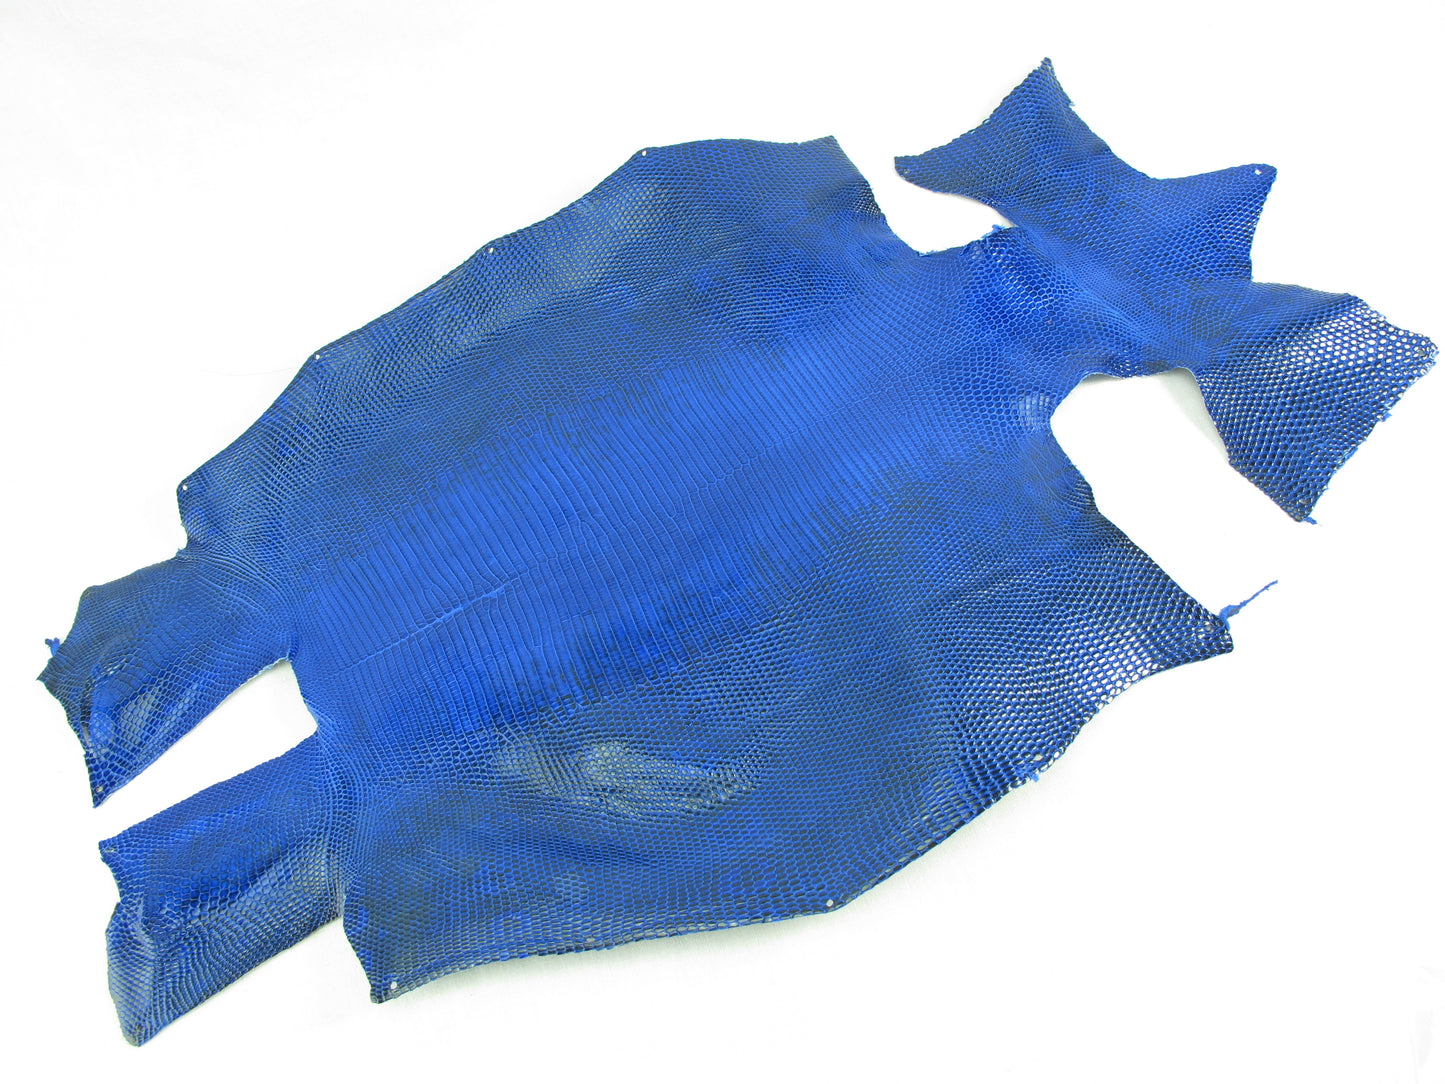 Genuine Water Monitor Lizard Belly Skin Leather Hide Pelt Ultramarine Blue